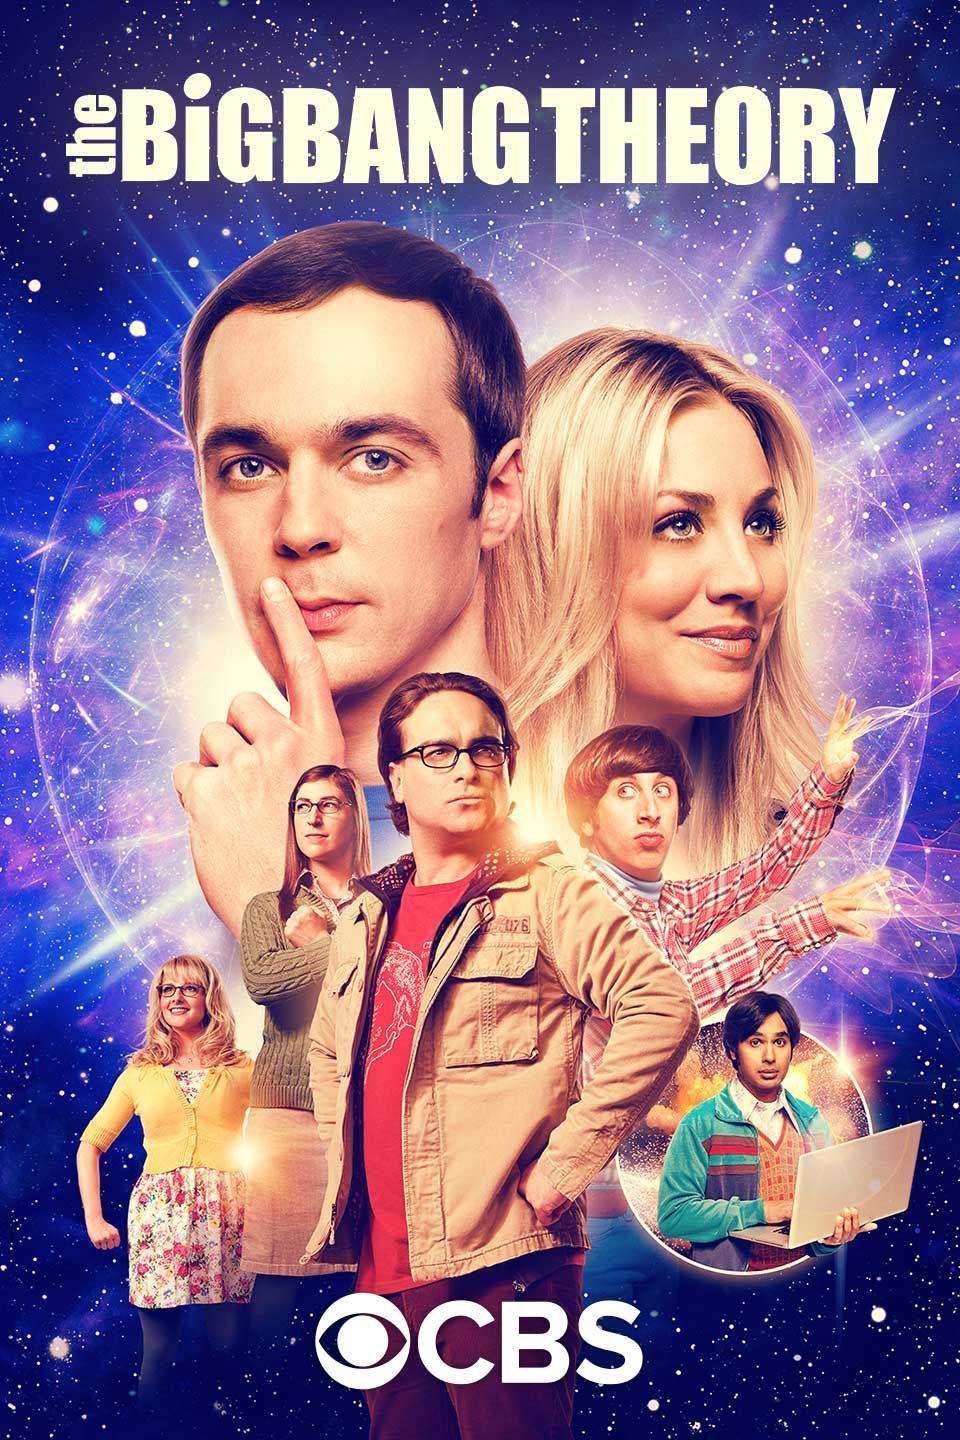 Póster de The Big Bang Theory con Penny y Sheldon en el centro y el resto del reparto en varias poses.